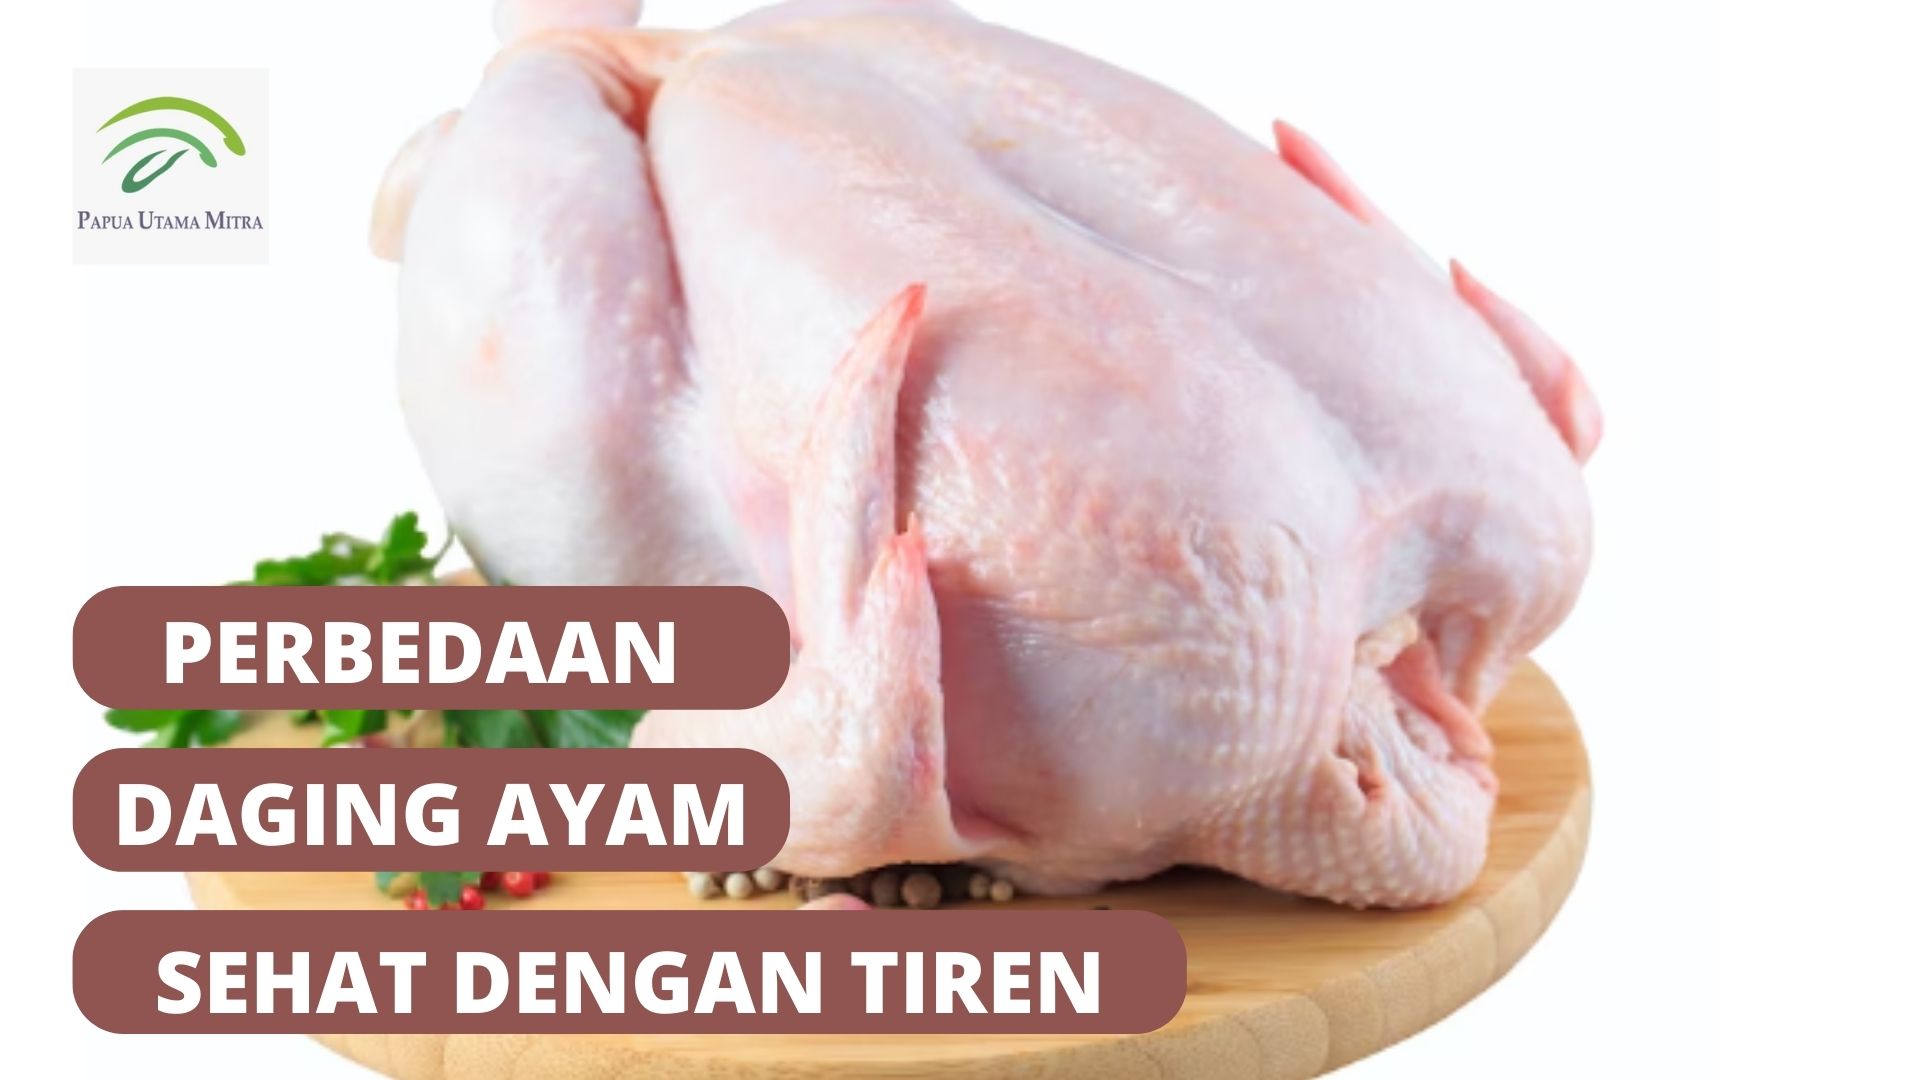 Perbedaan Daging Ayam Sehat dengan Tiren 